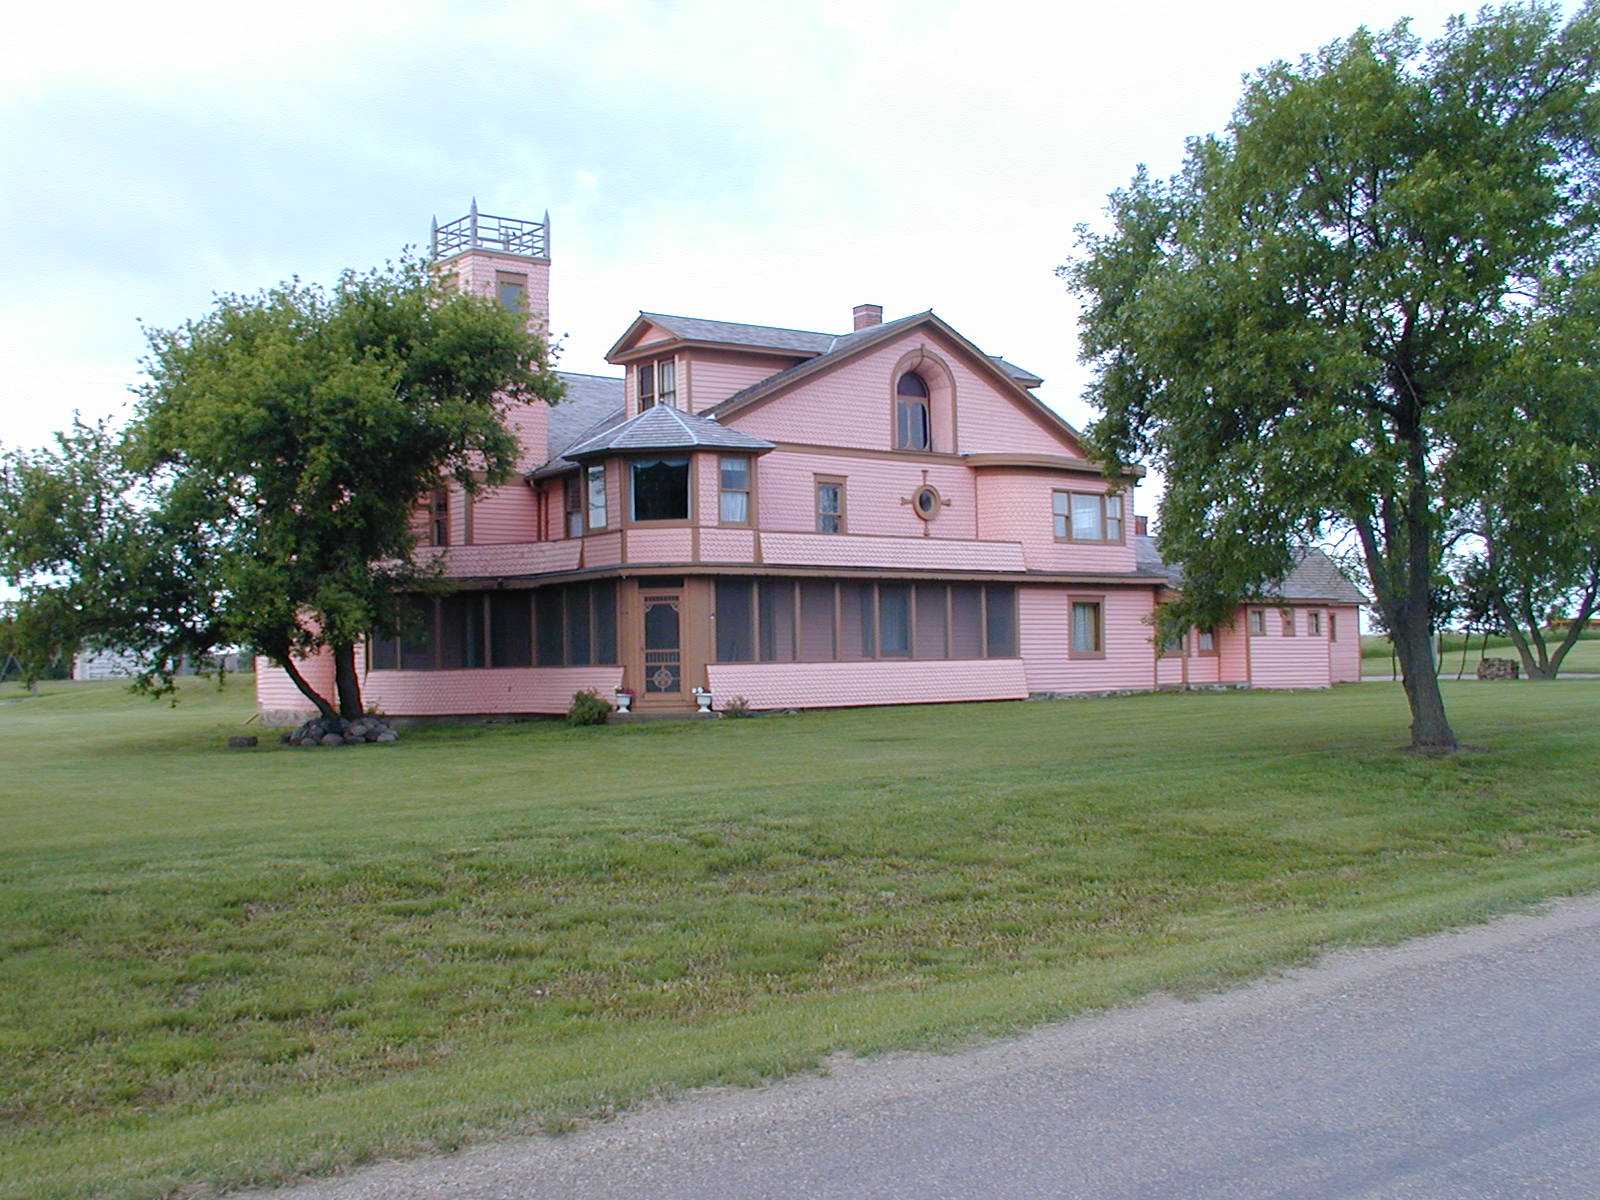 Pickler Mansion's image